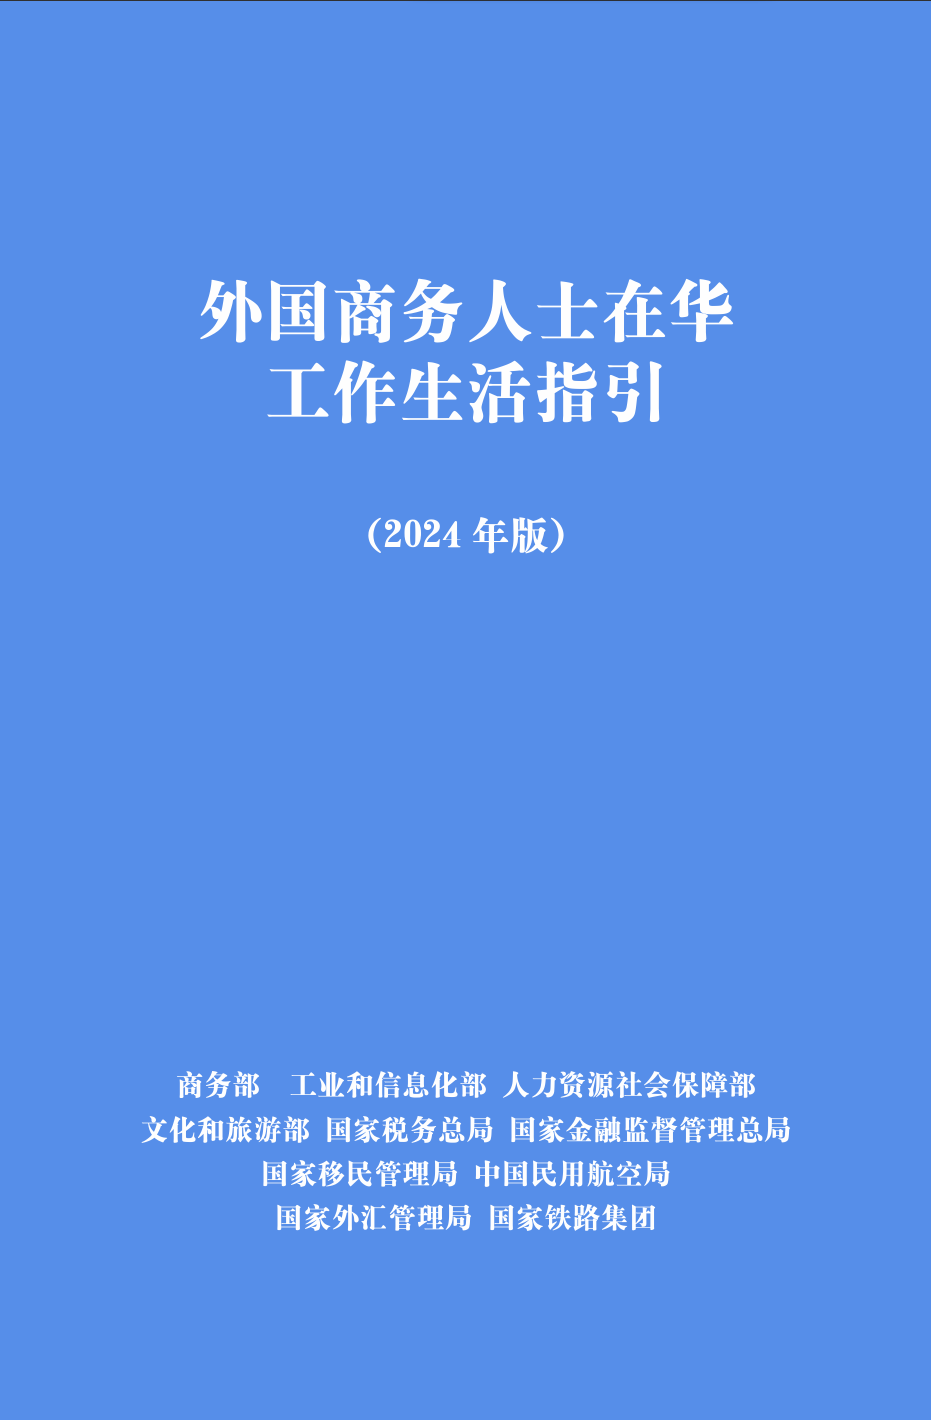 《外国商务人士在华工作生活指引》（2024年版）。图源：中国商务部网站